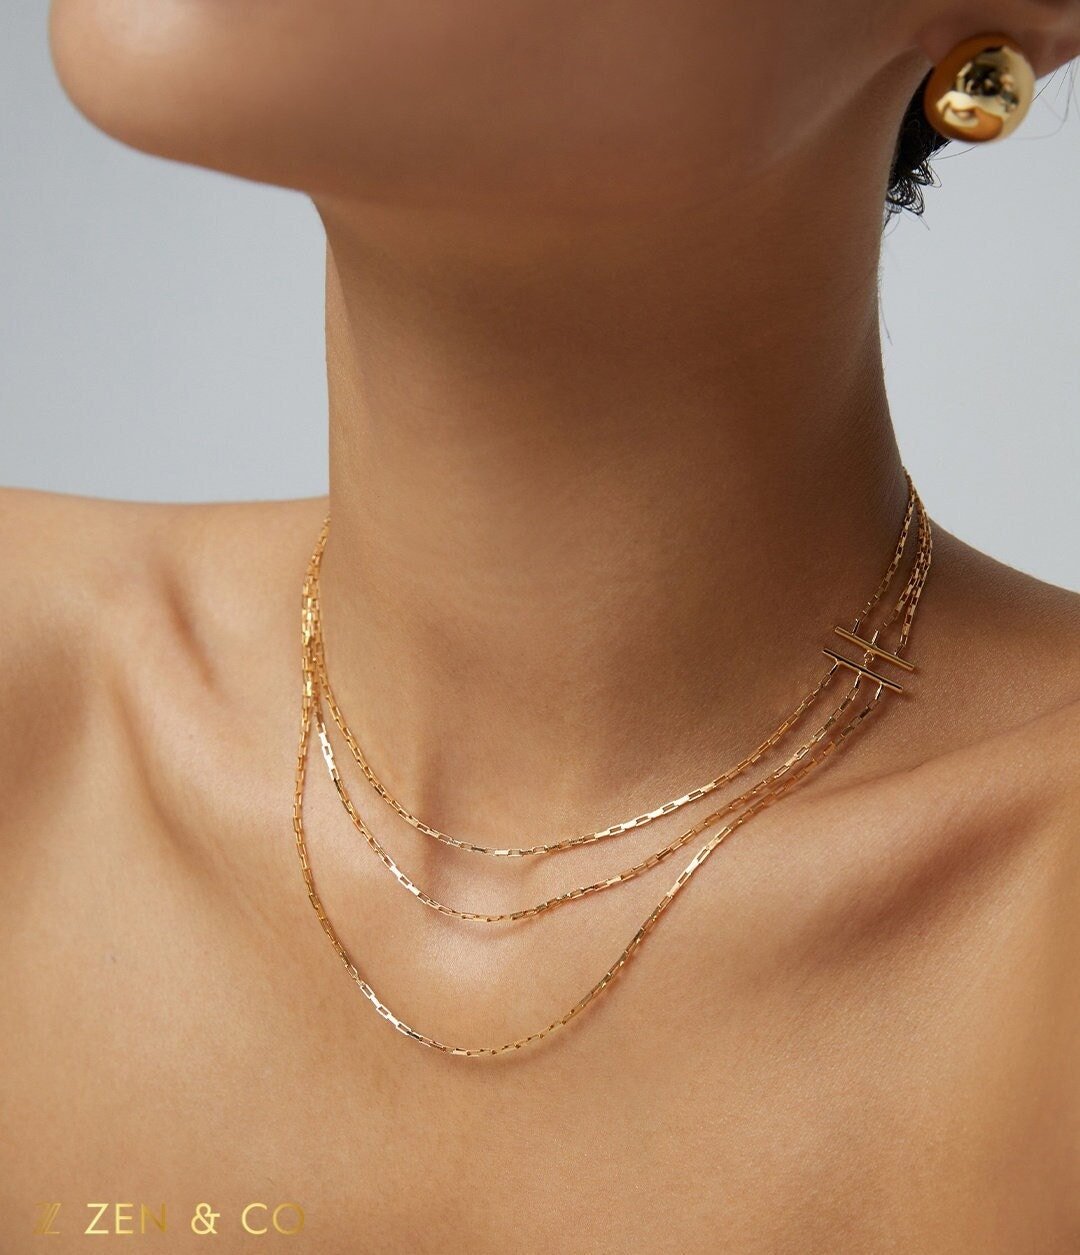 HARPER Minimalist 3 layer stackable necklace - ZEN&CO Studio